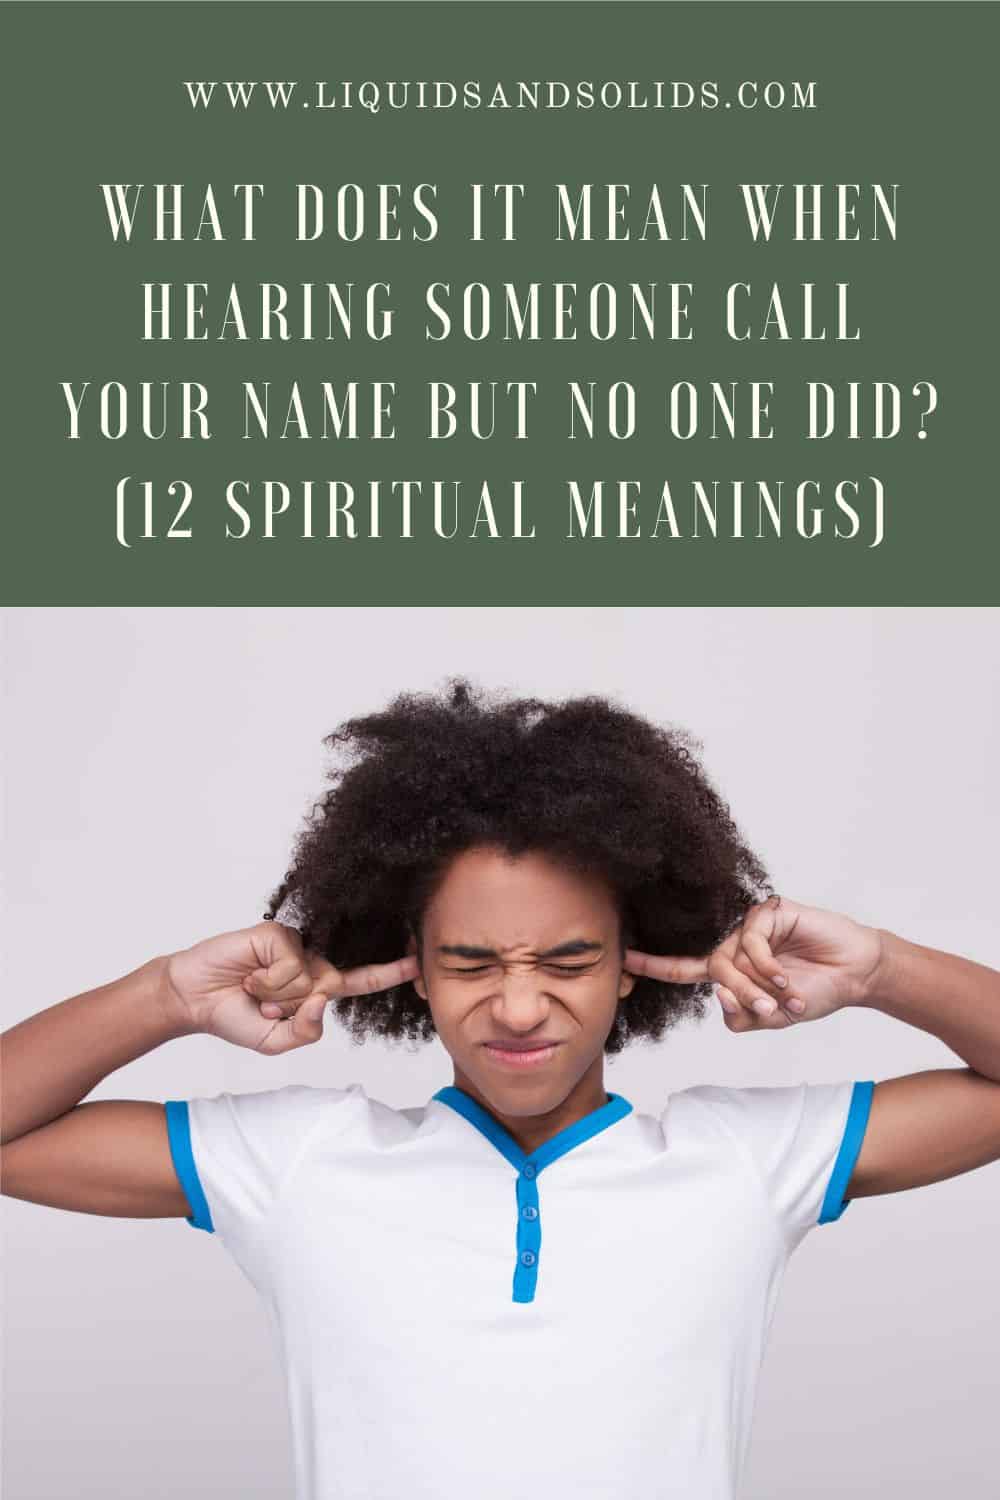  Mida tähendab see, kui kuuled, et keegi hüüab sinu nime, aga keegi ei ole seda teinud? (12 vaimset tähendust)